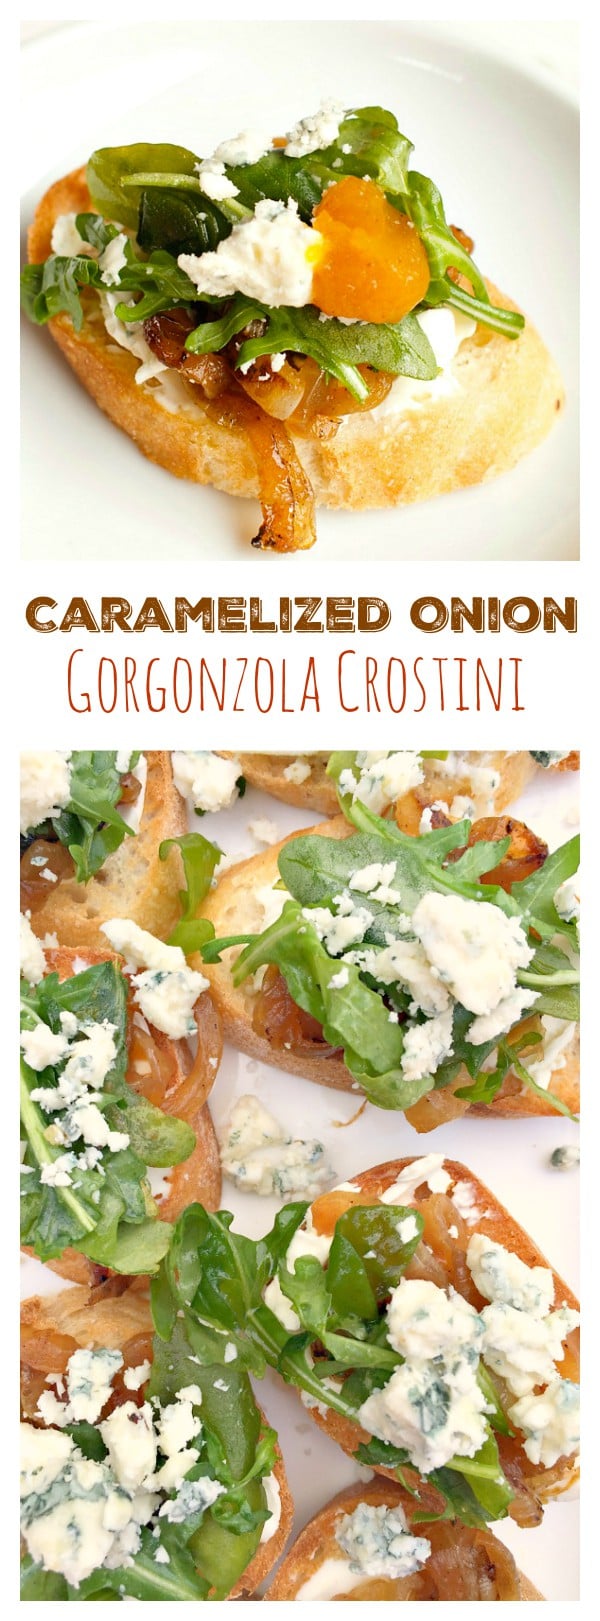 Caramelized Onion Gorgonzola Crostini